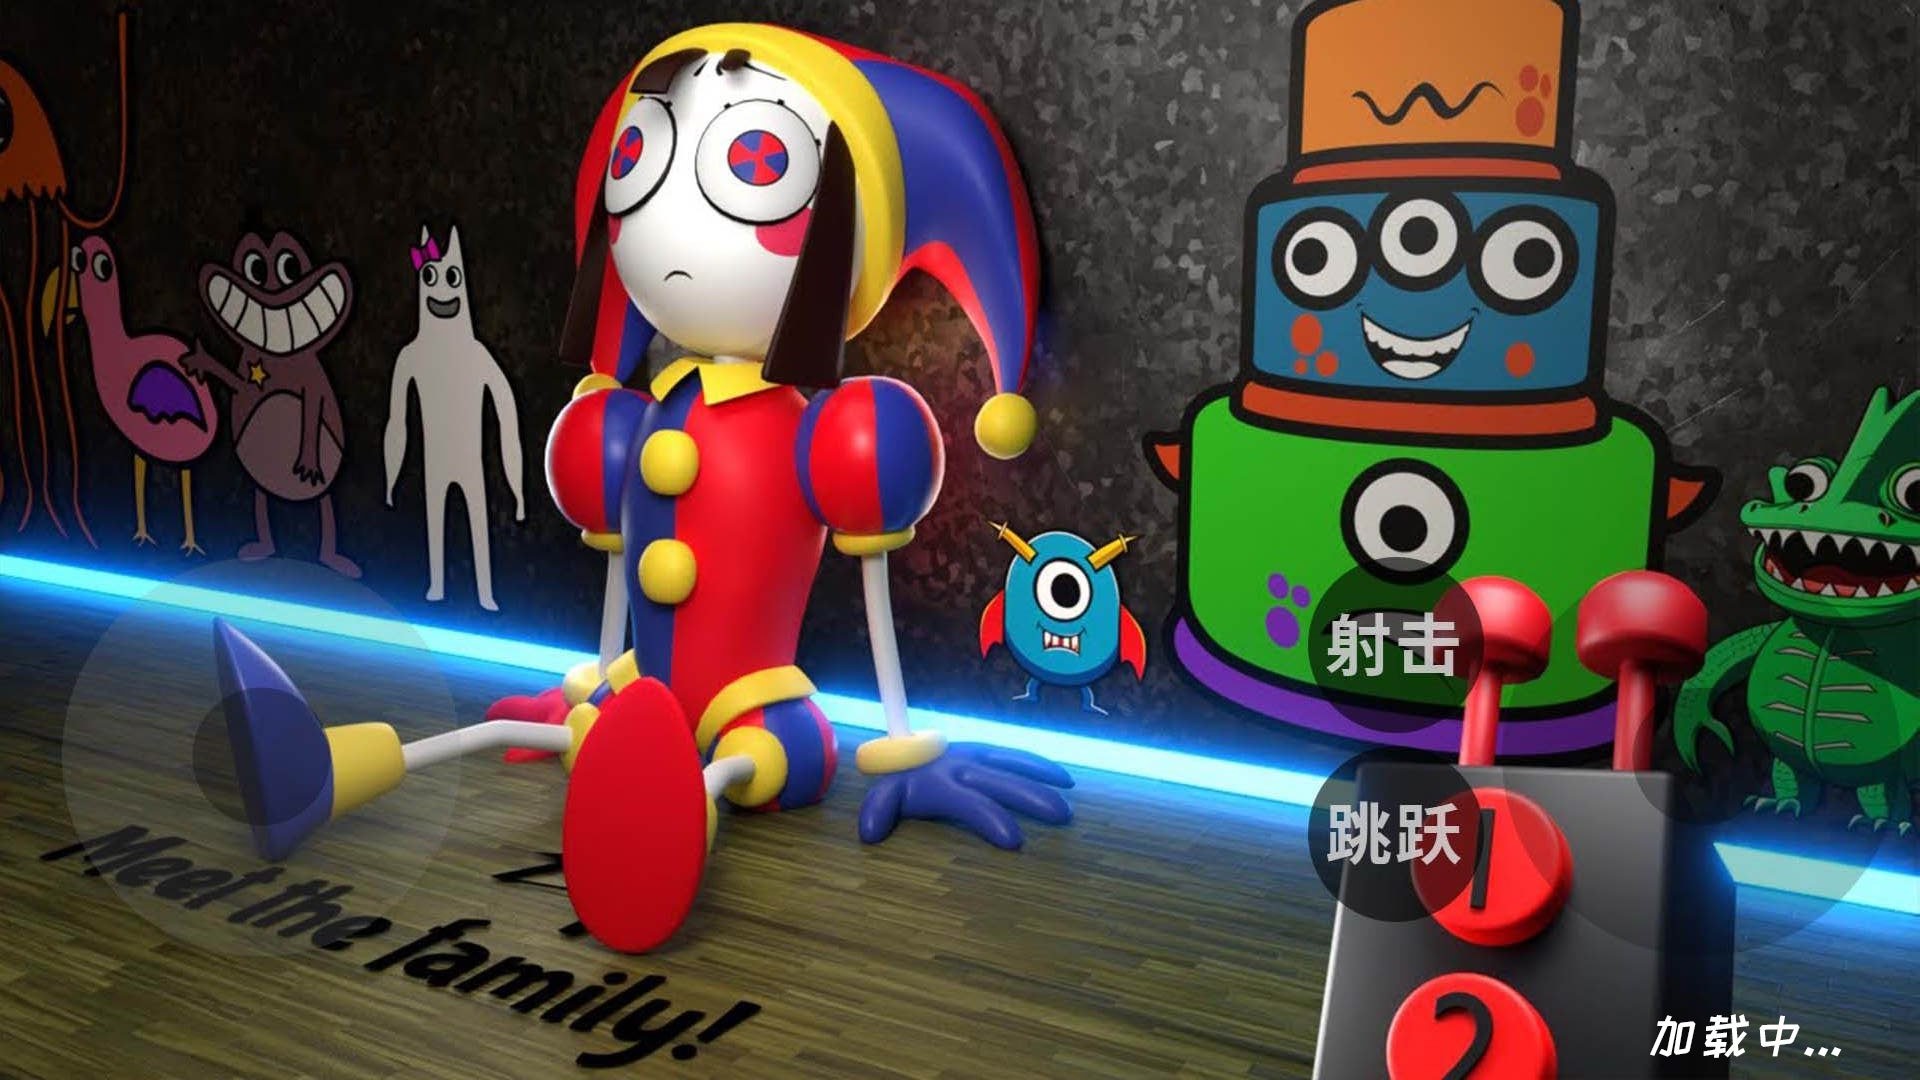 快乐小丑模拟器游戏下载手机版 v1.0截图3